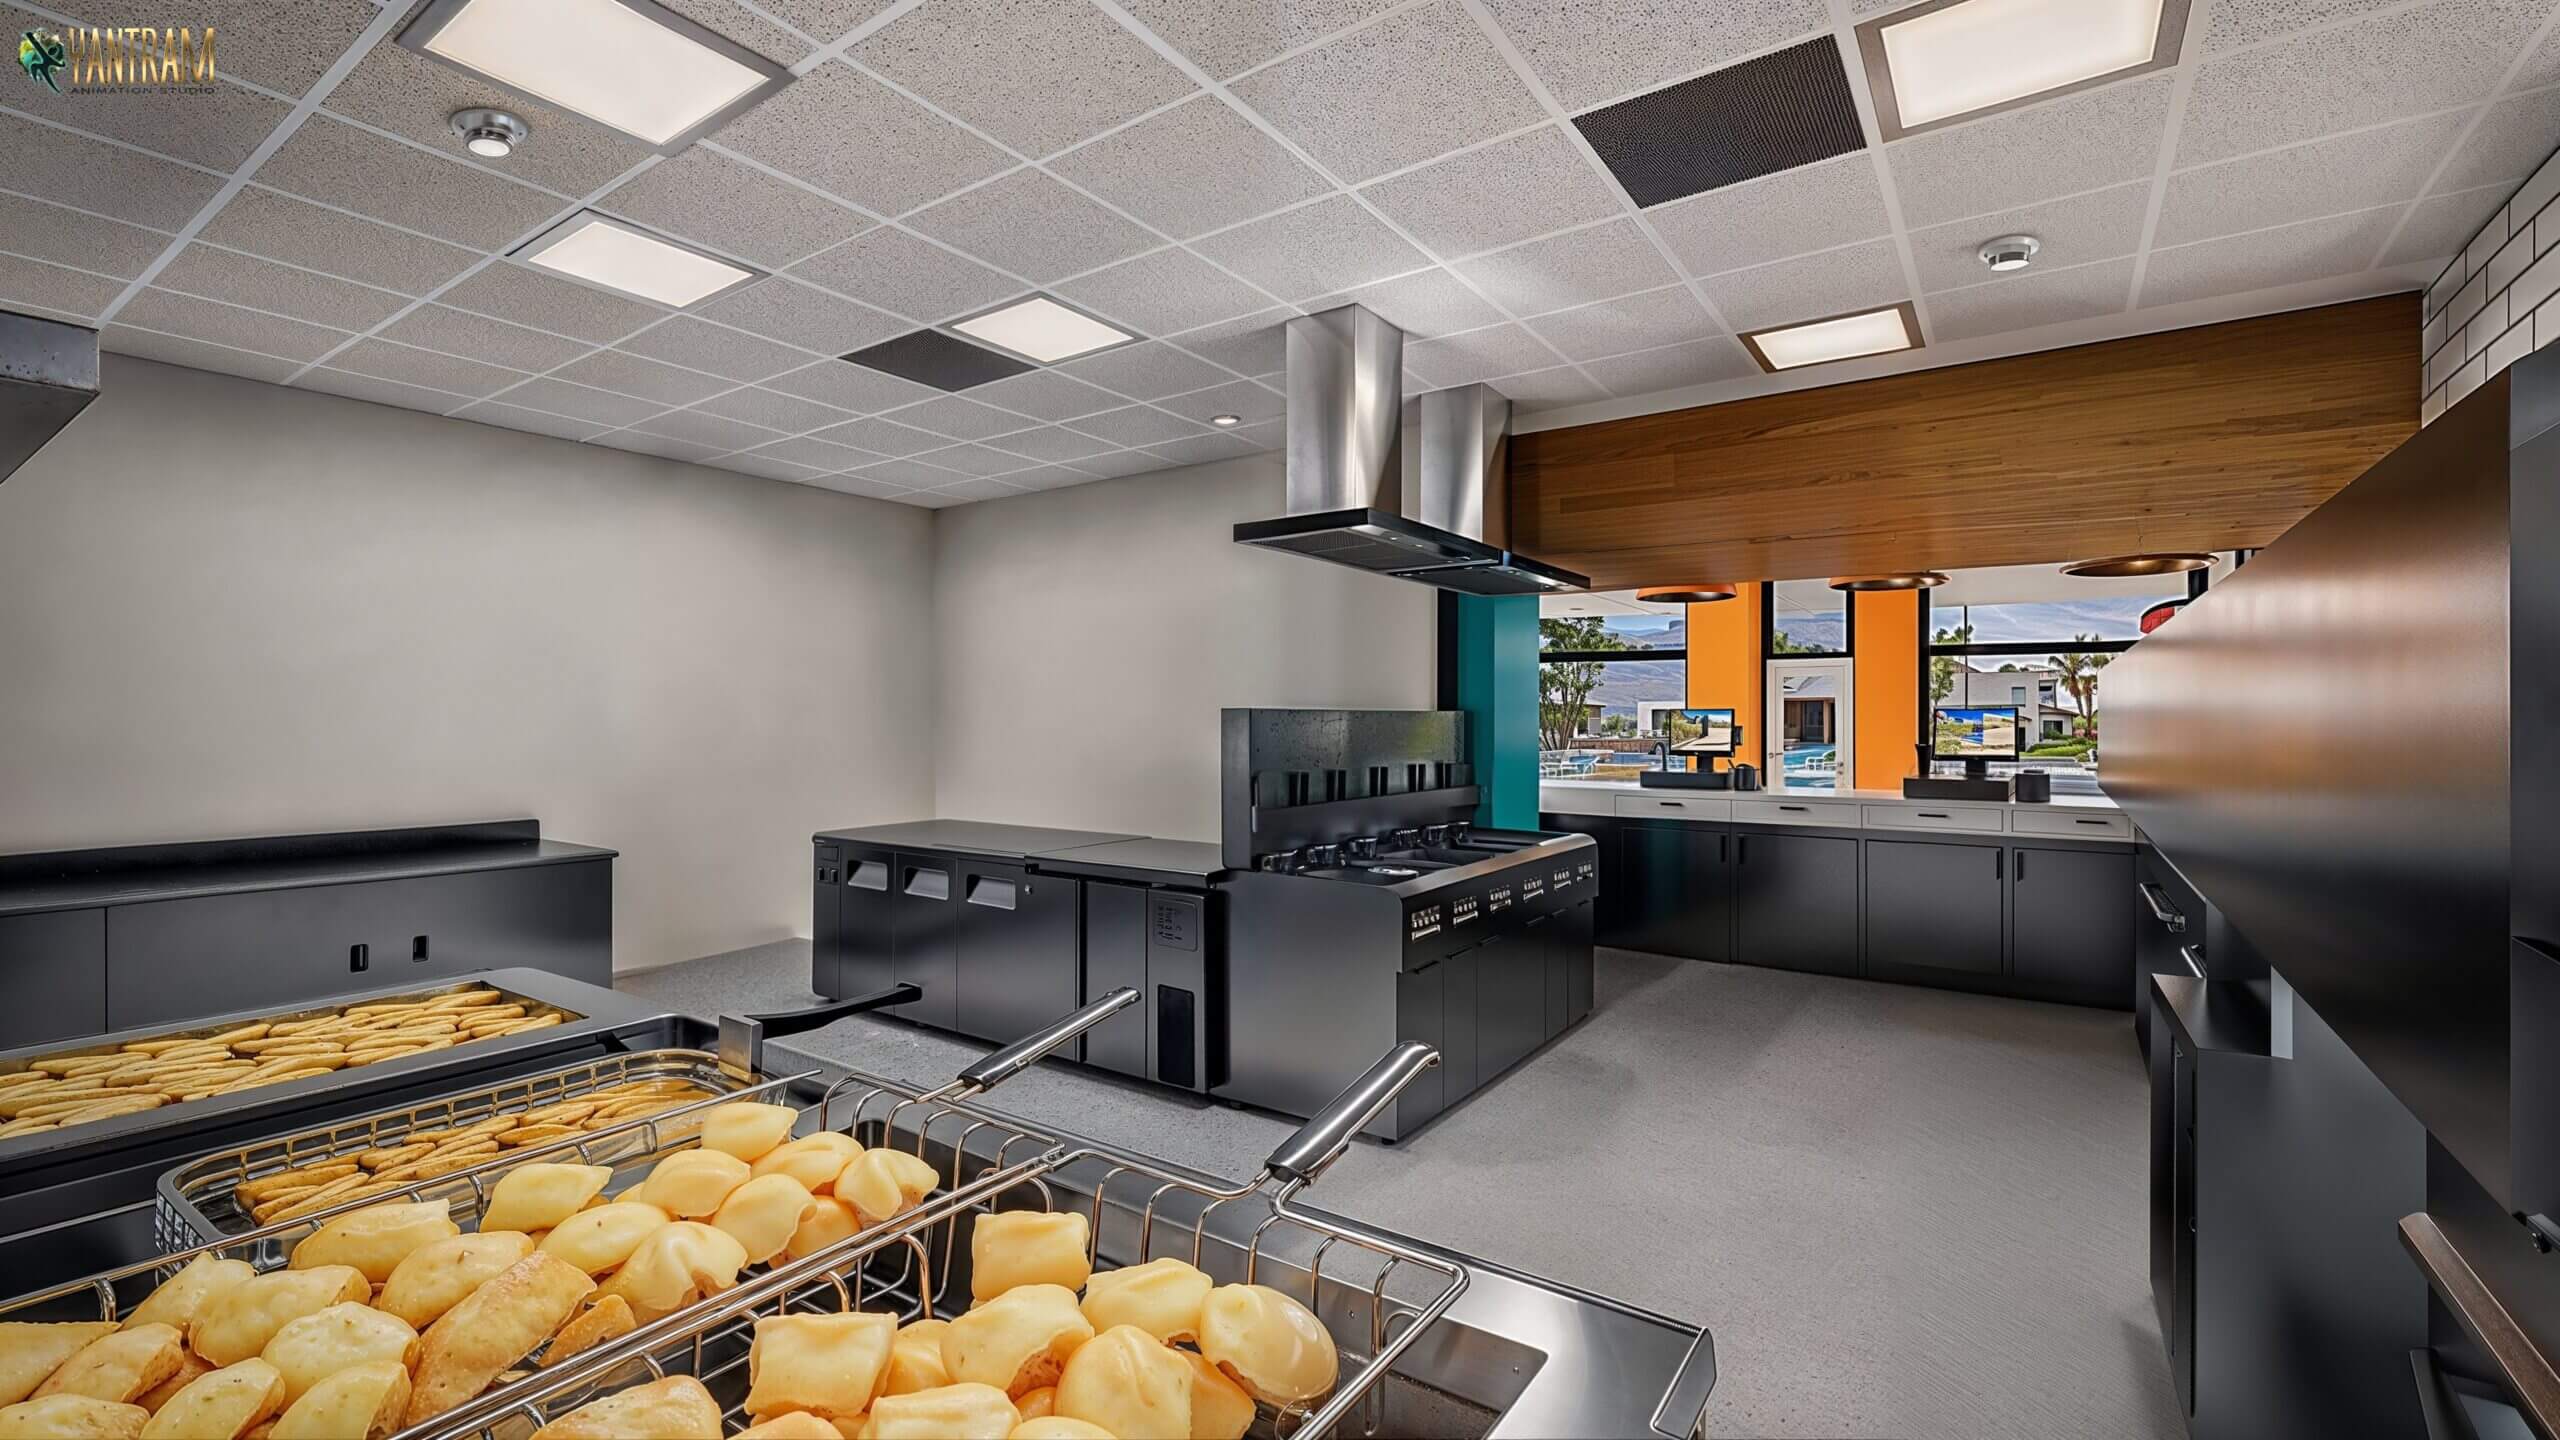 Visualizing Flavor 3D Interior Designs for Chicken Shop Kitchen Areas